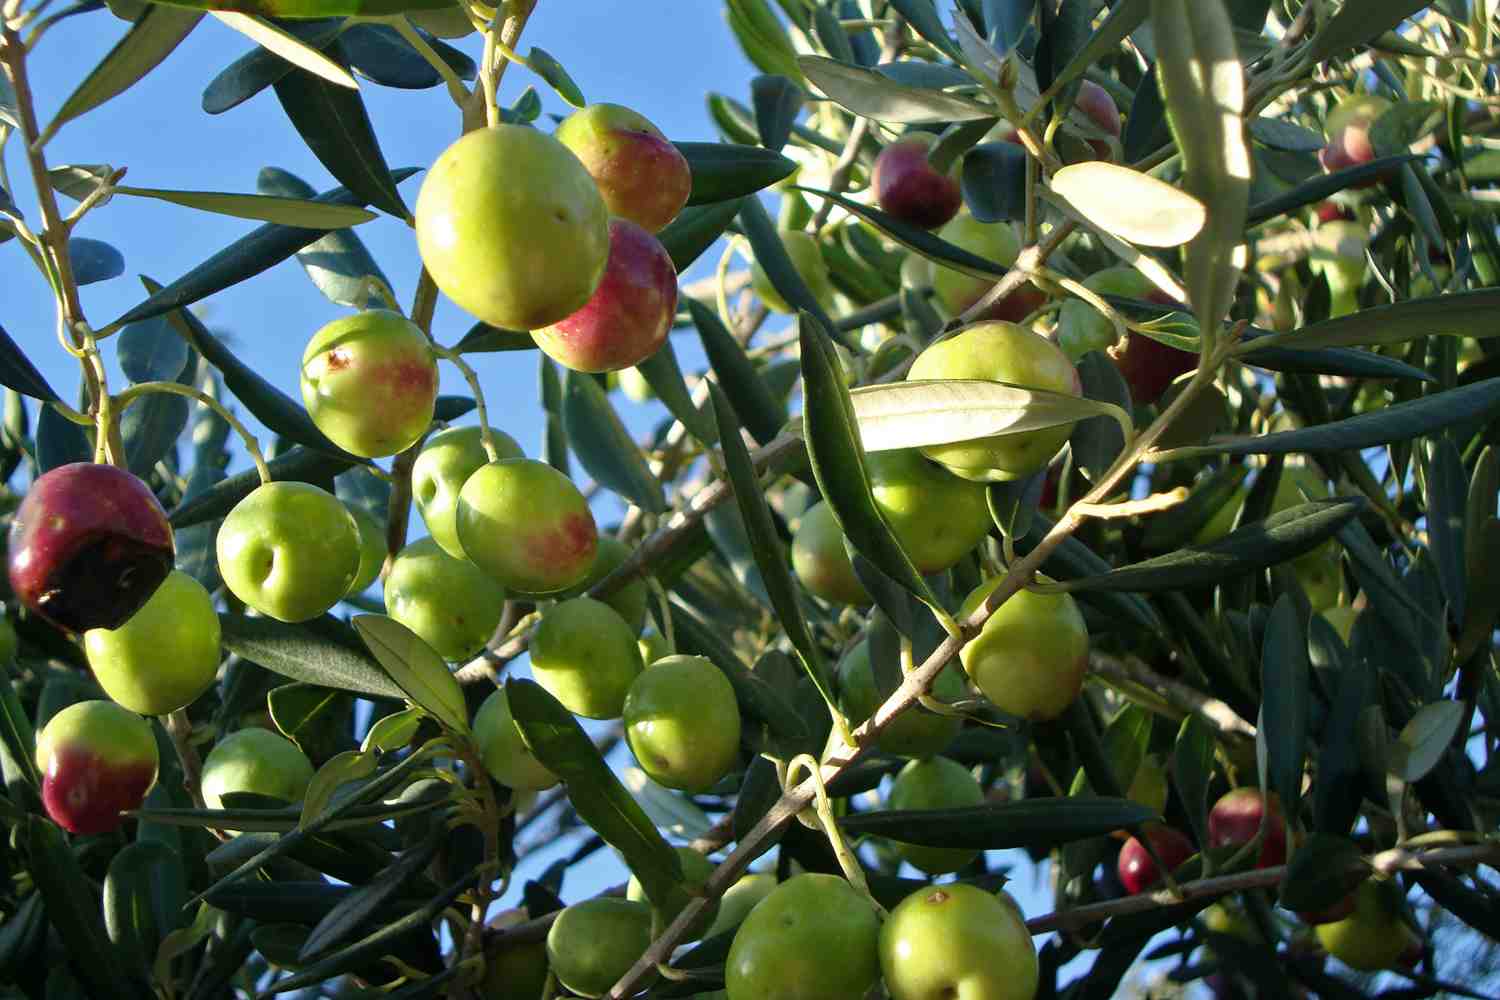 Šipan olive groves